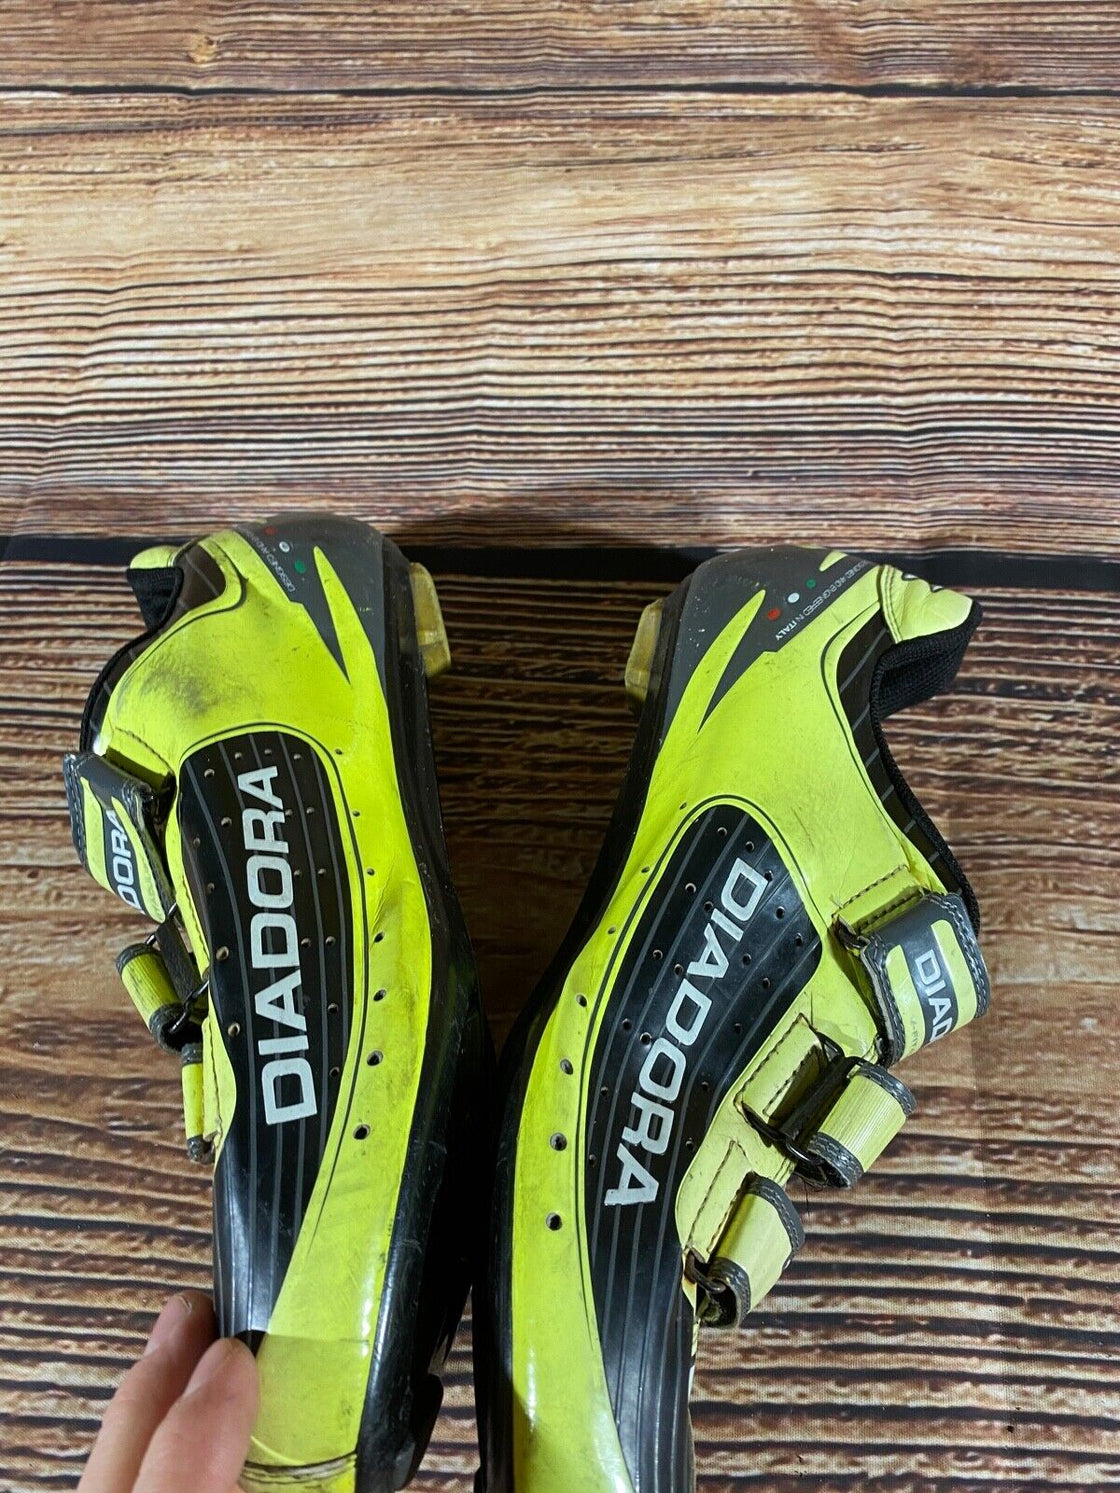 DIADORA Trivex Road Cycling Shoes Biking Boots Shoes Size EU44, US10, Mondo 278